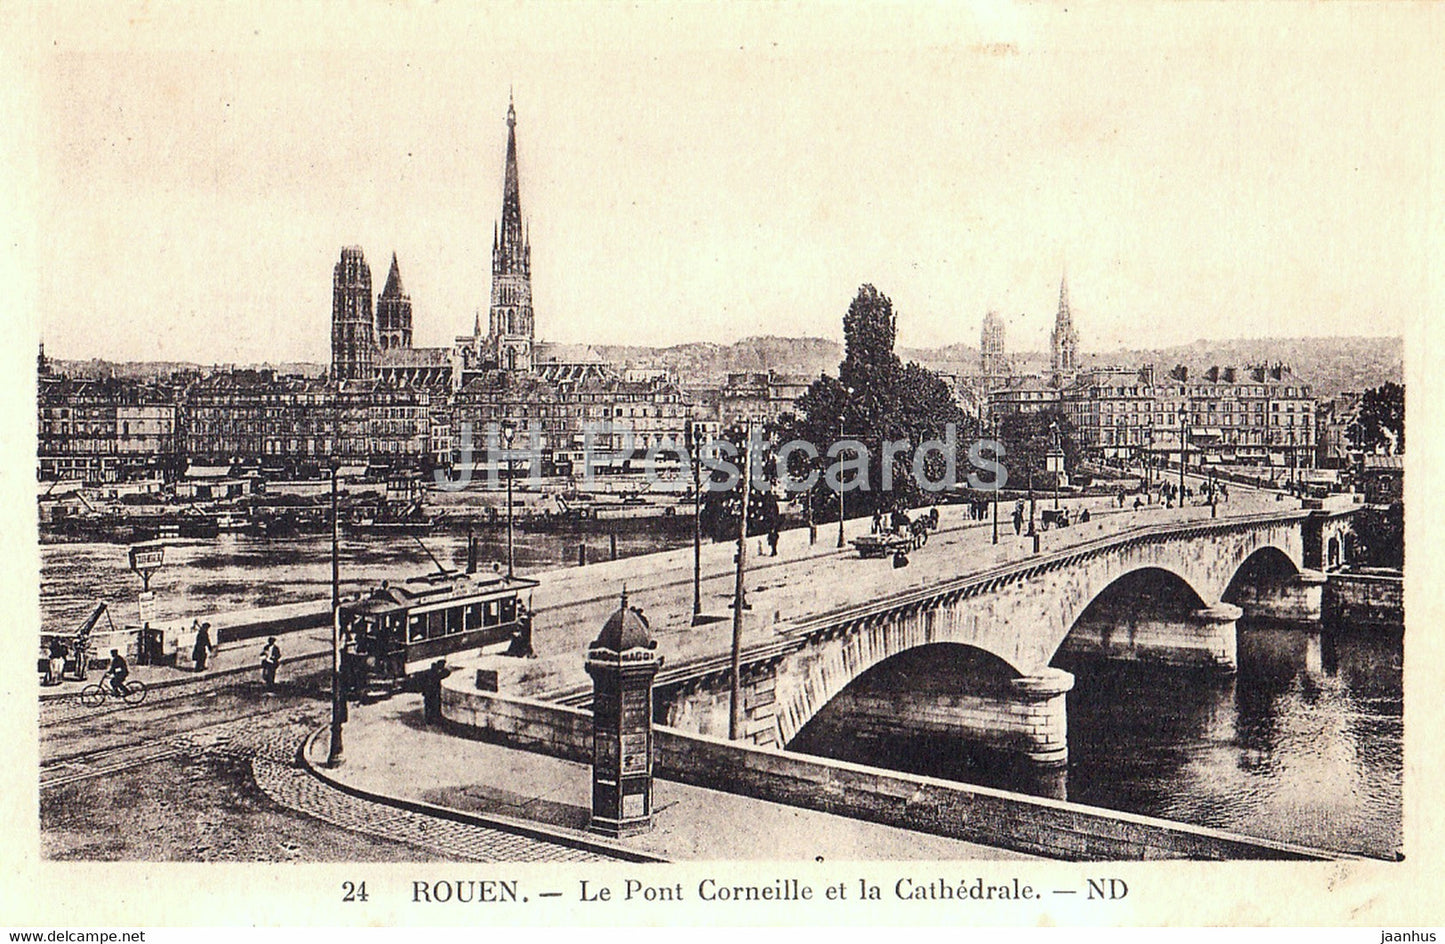 Rouen - Le Pont Corneille et la Cathedrale - tram - 24 - old postcard - France - unused - JH Postcards